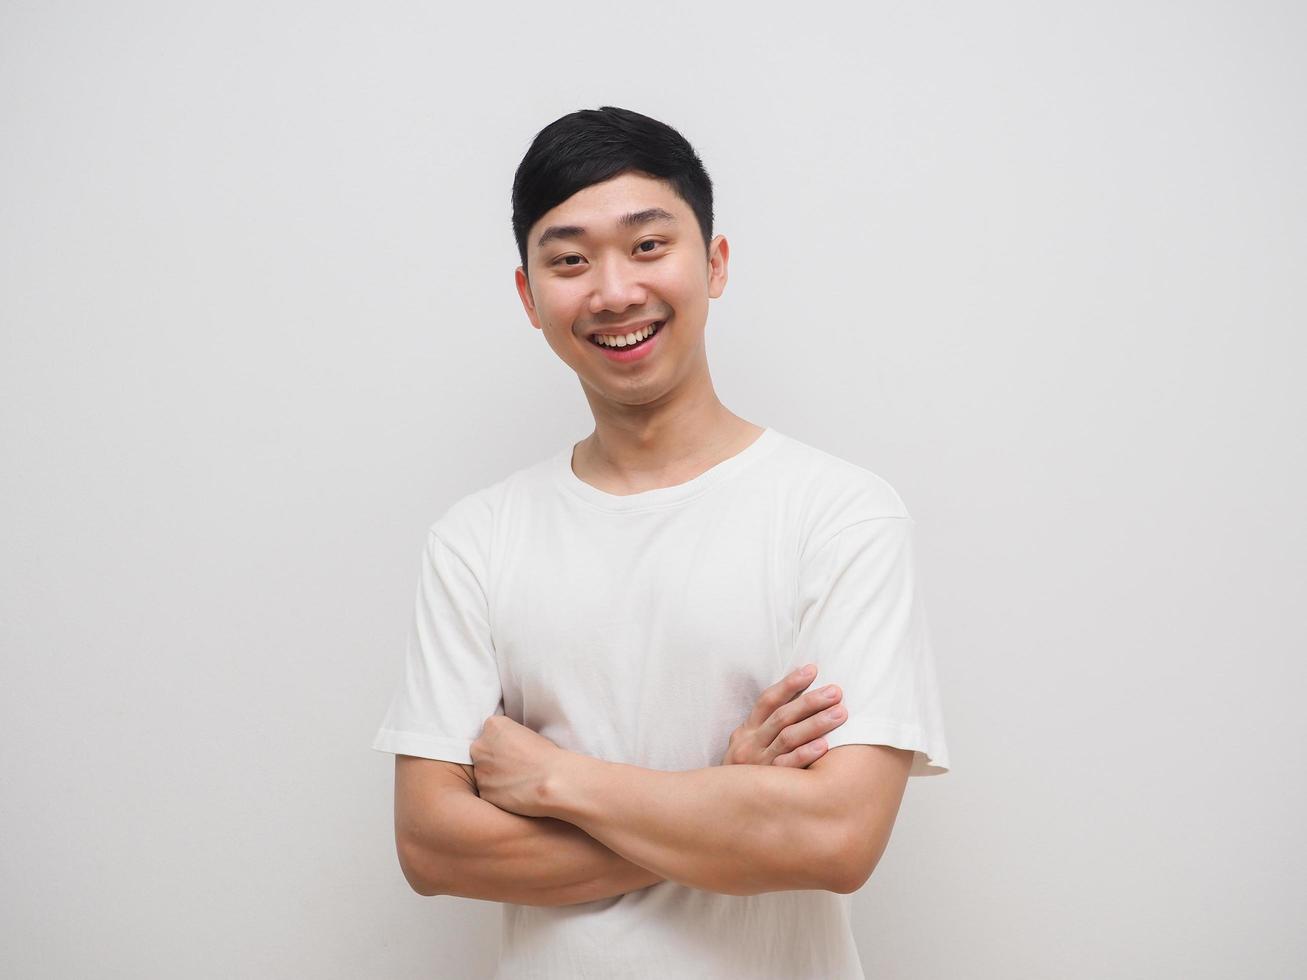 camisa branca de homem asiático cruze os braços com um sorriso feliz e ria do rosto no fundo branco isoalte foto